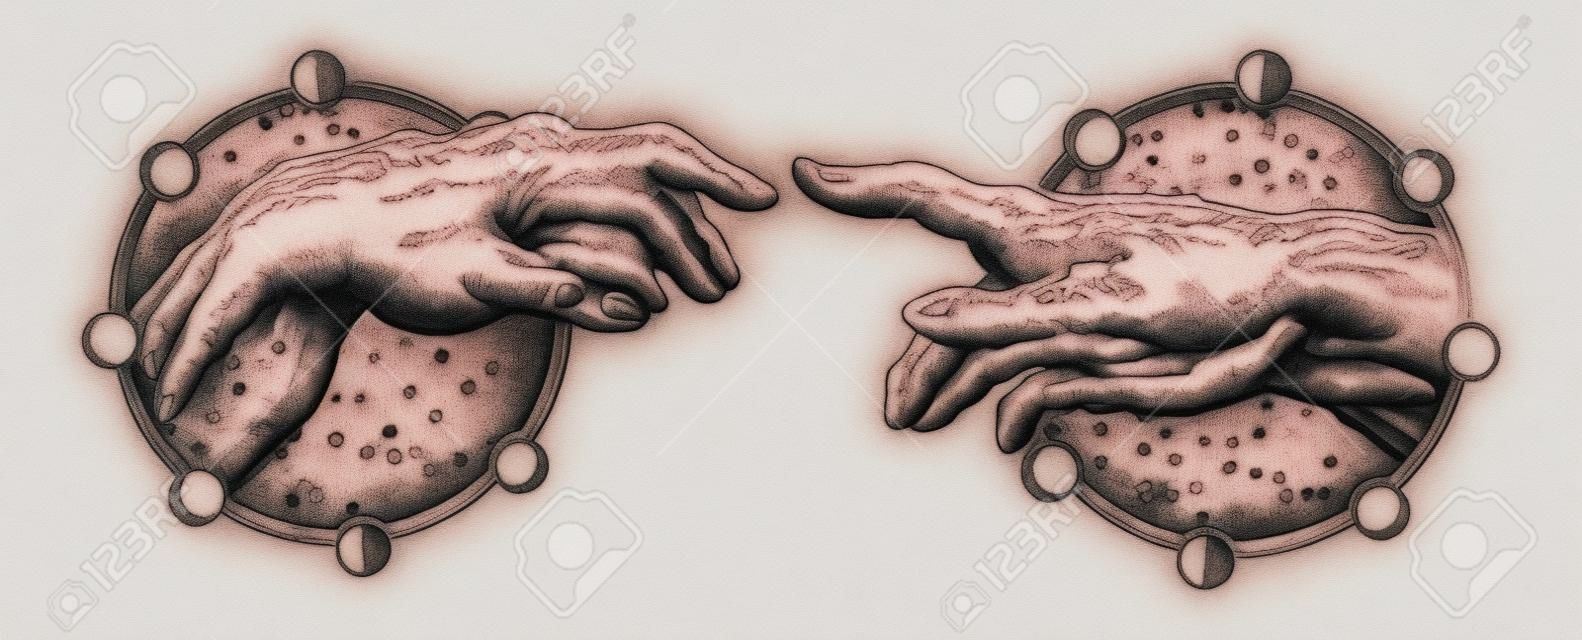 Michelangelo Gottes Berührung. Menschliche Hände, die mit Tätowierung- und T-Shirtdesign der Finger berühren. Hände Tattoo Renaissance. Götter und Adam, Symbol der Spiritualität, Religion, Verbindung und Interaktion